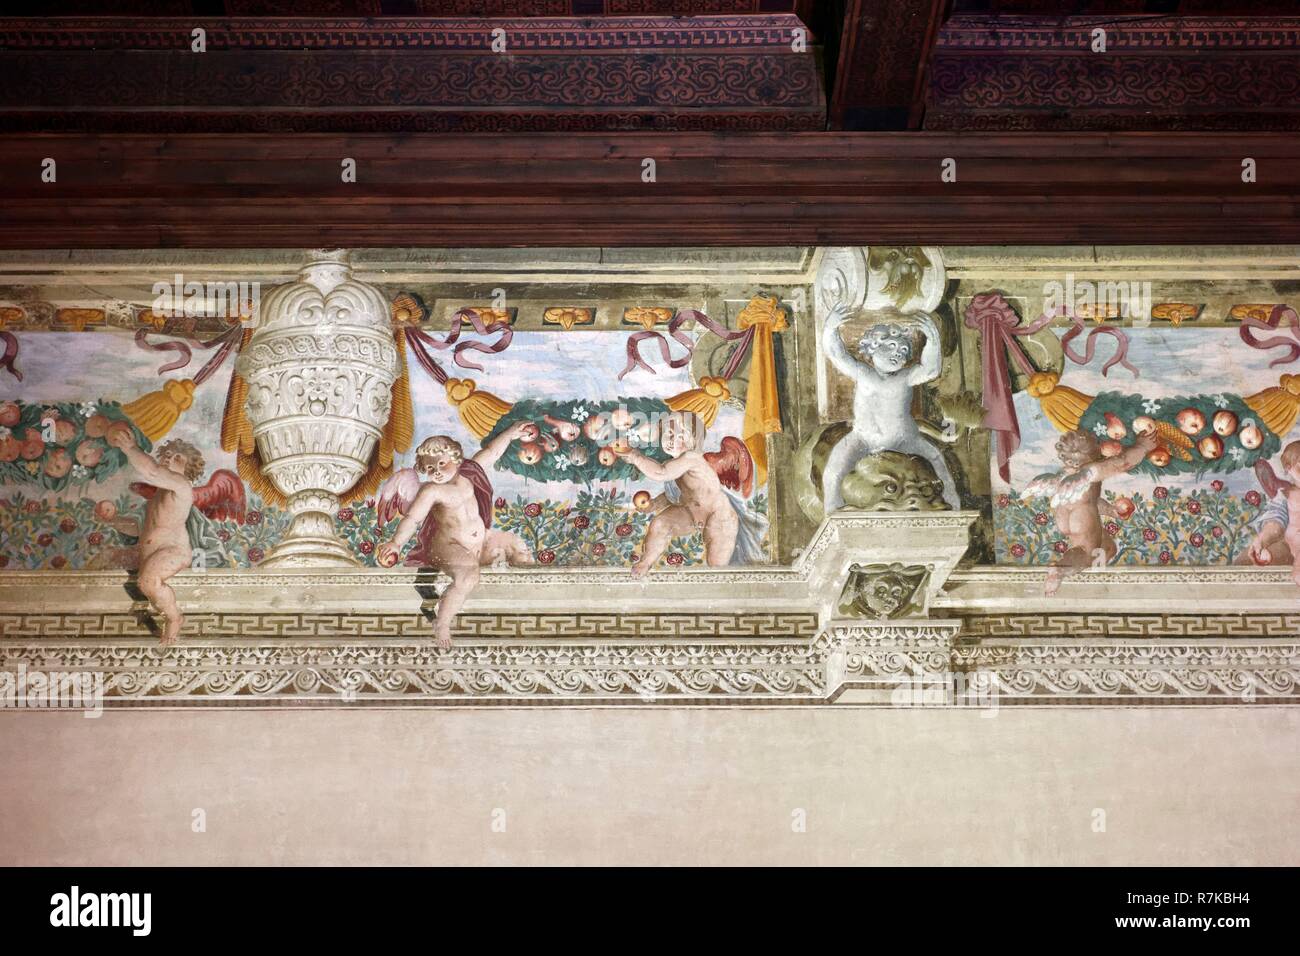 Italien, Lombardei, Mantua (Mantova), als Weltkulturerbe von der UNESCO, der Palazzo Ducale, berühmten Residenz der Familie Gonzaga, Kapelle (drittes Zimmer von guastalla) Stockfoto